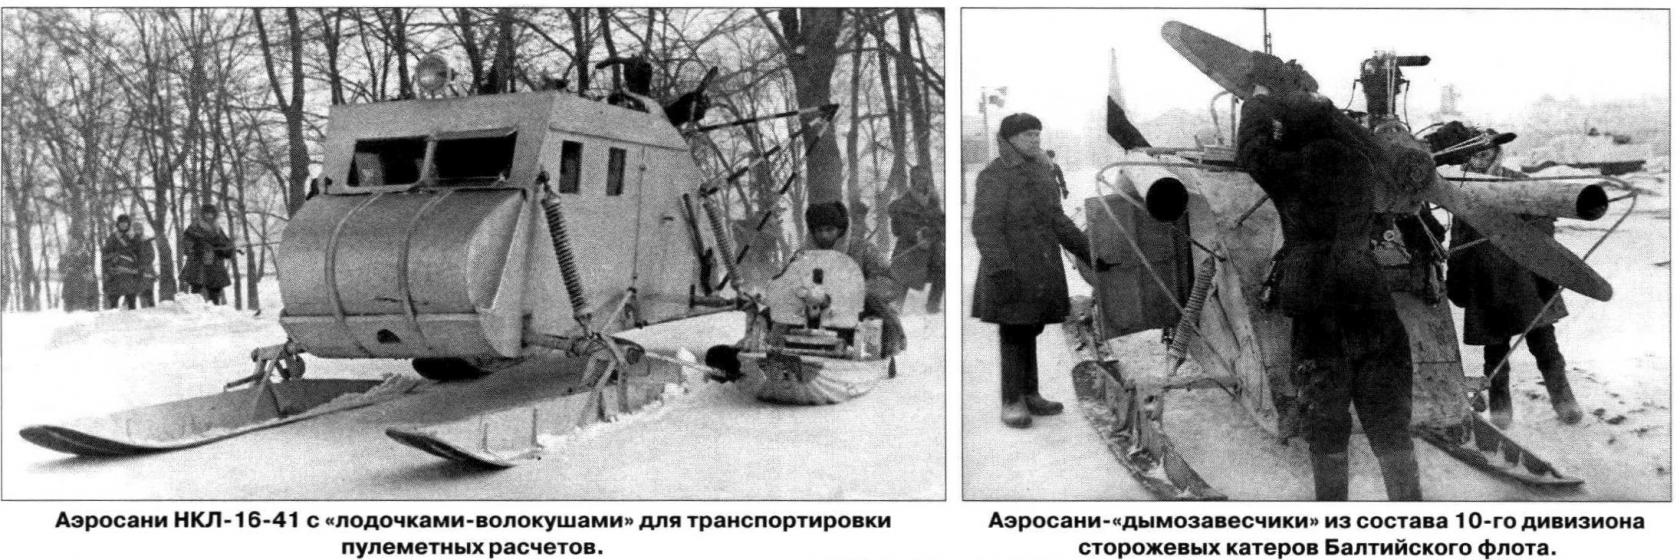 Транспорт для российских просторов. Снежная кавалерия Часть 3